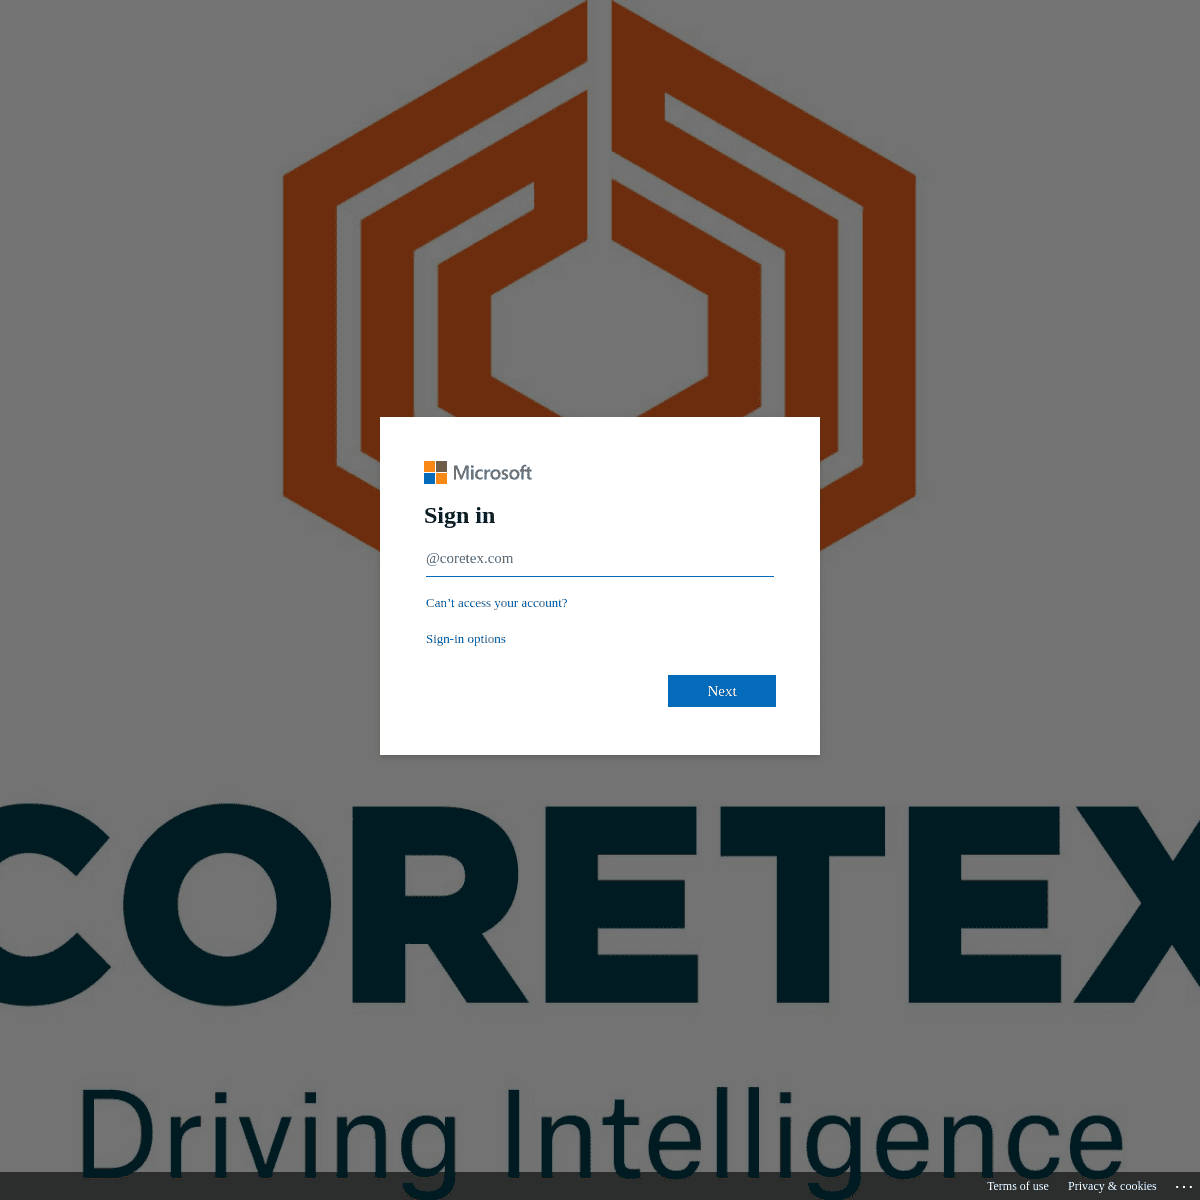 A complete backup of coretexltd.sharepoint.com